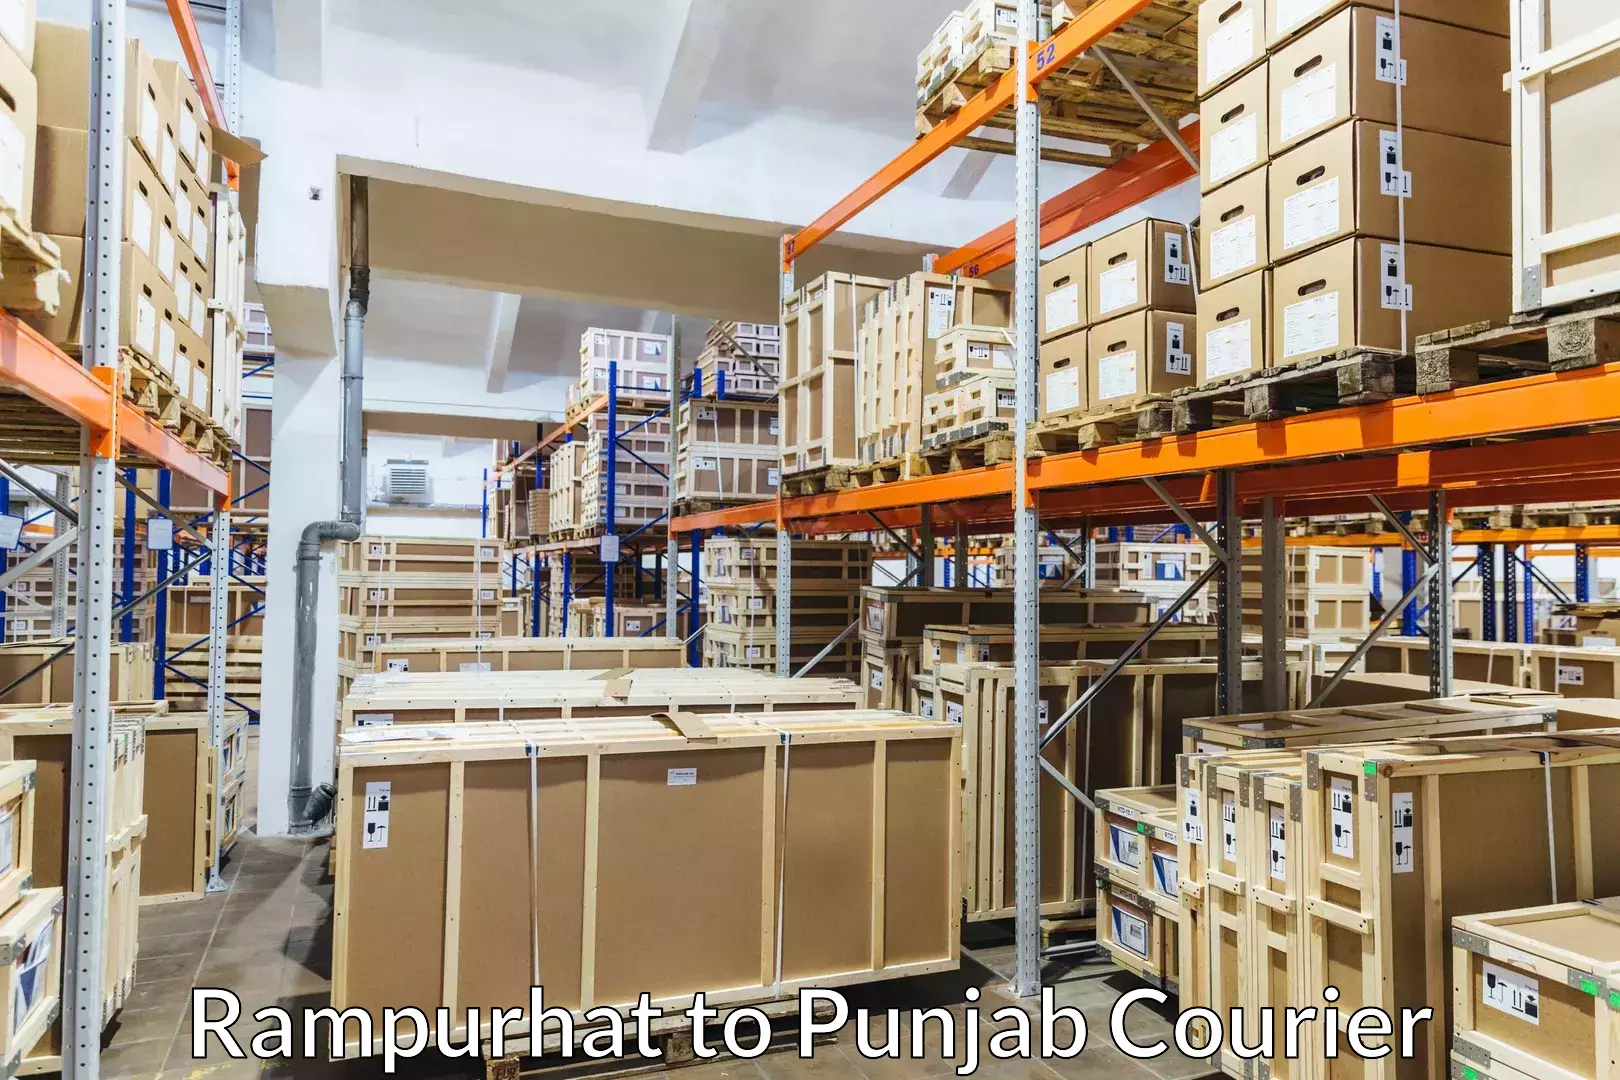 Urgent luggage shipment Rampurhat to Central University of Punjab Bathinda